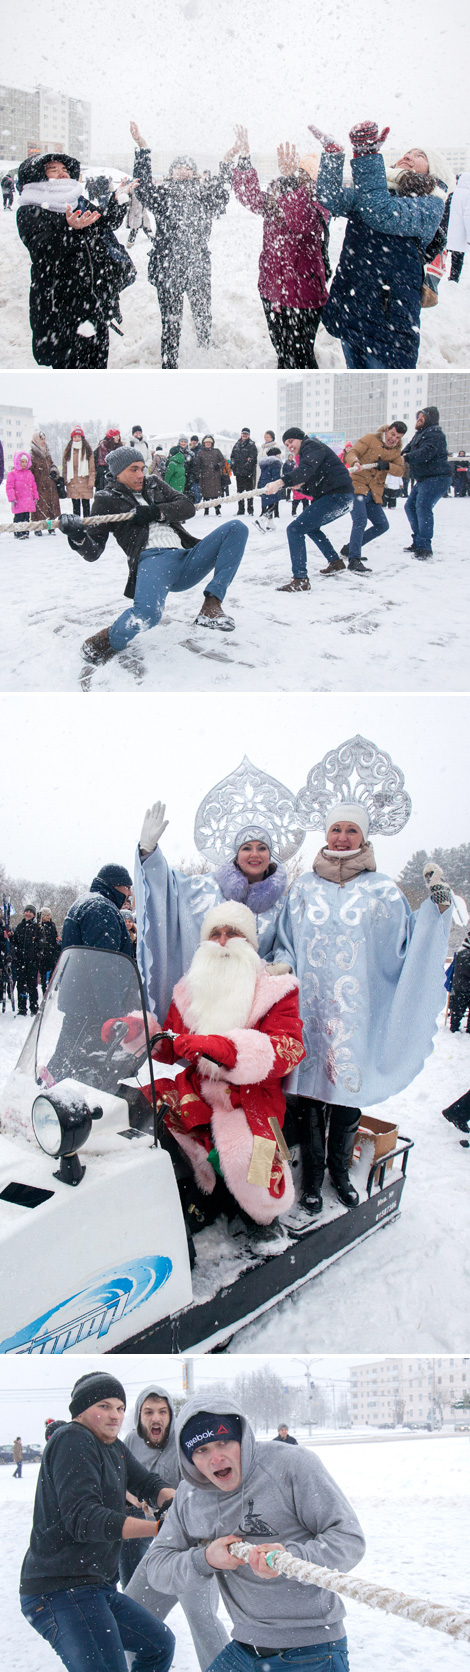 Snow Day in Vitebsk